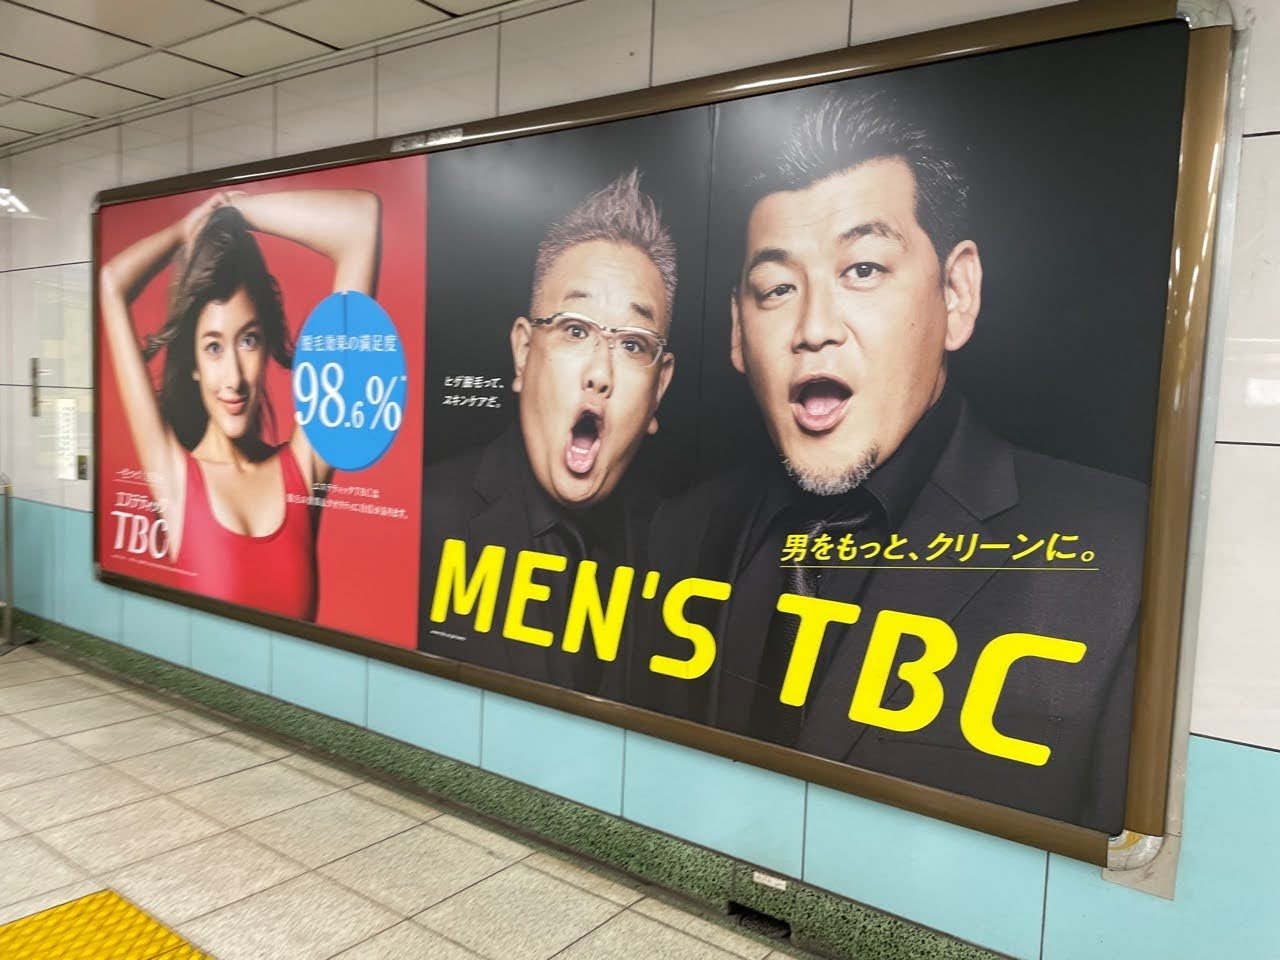 六本木駅で見かけた広告